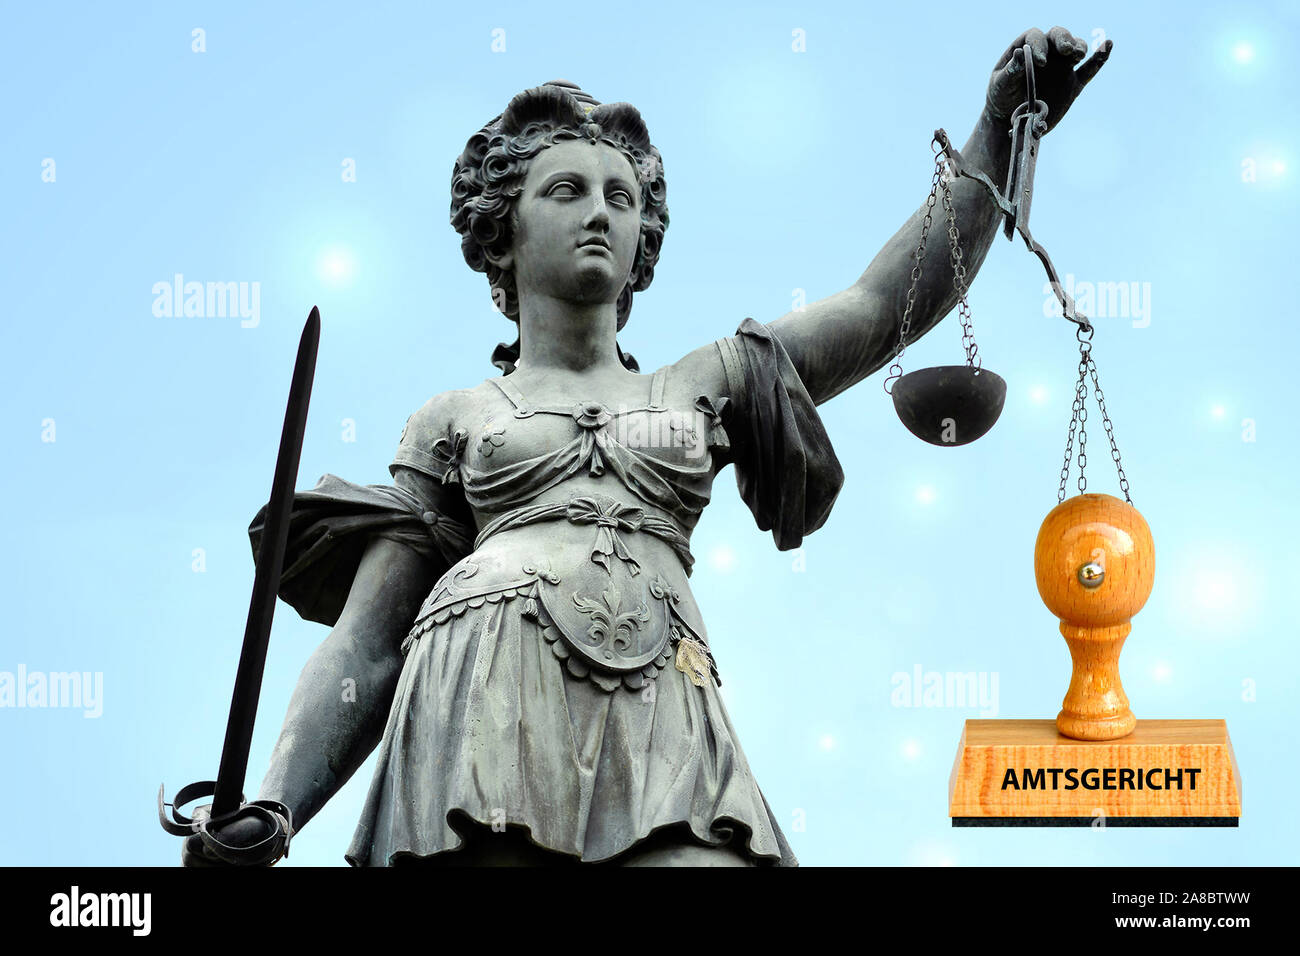 Recht, Gerechtigkeit, Justizia, Stempel, Amtsgericht, Gerechtigkeitswaage, Stock Photo